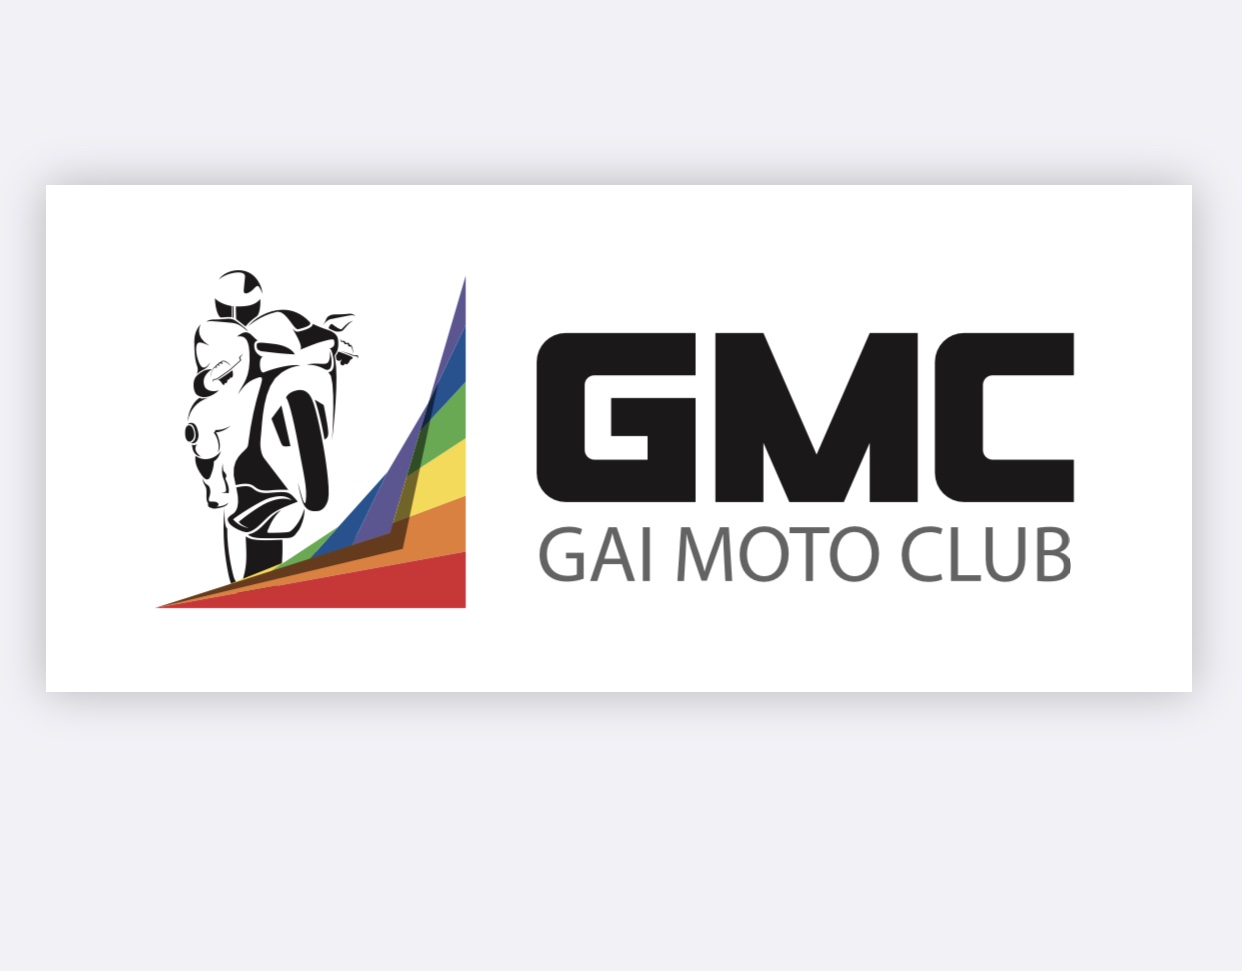 Gai Moto Club